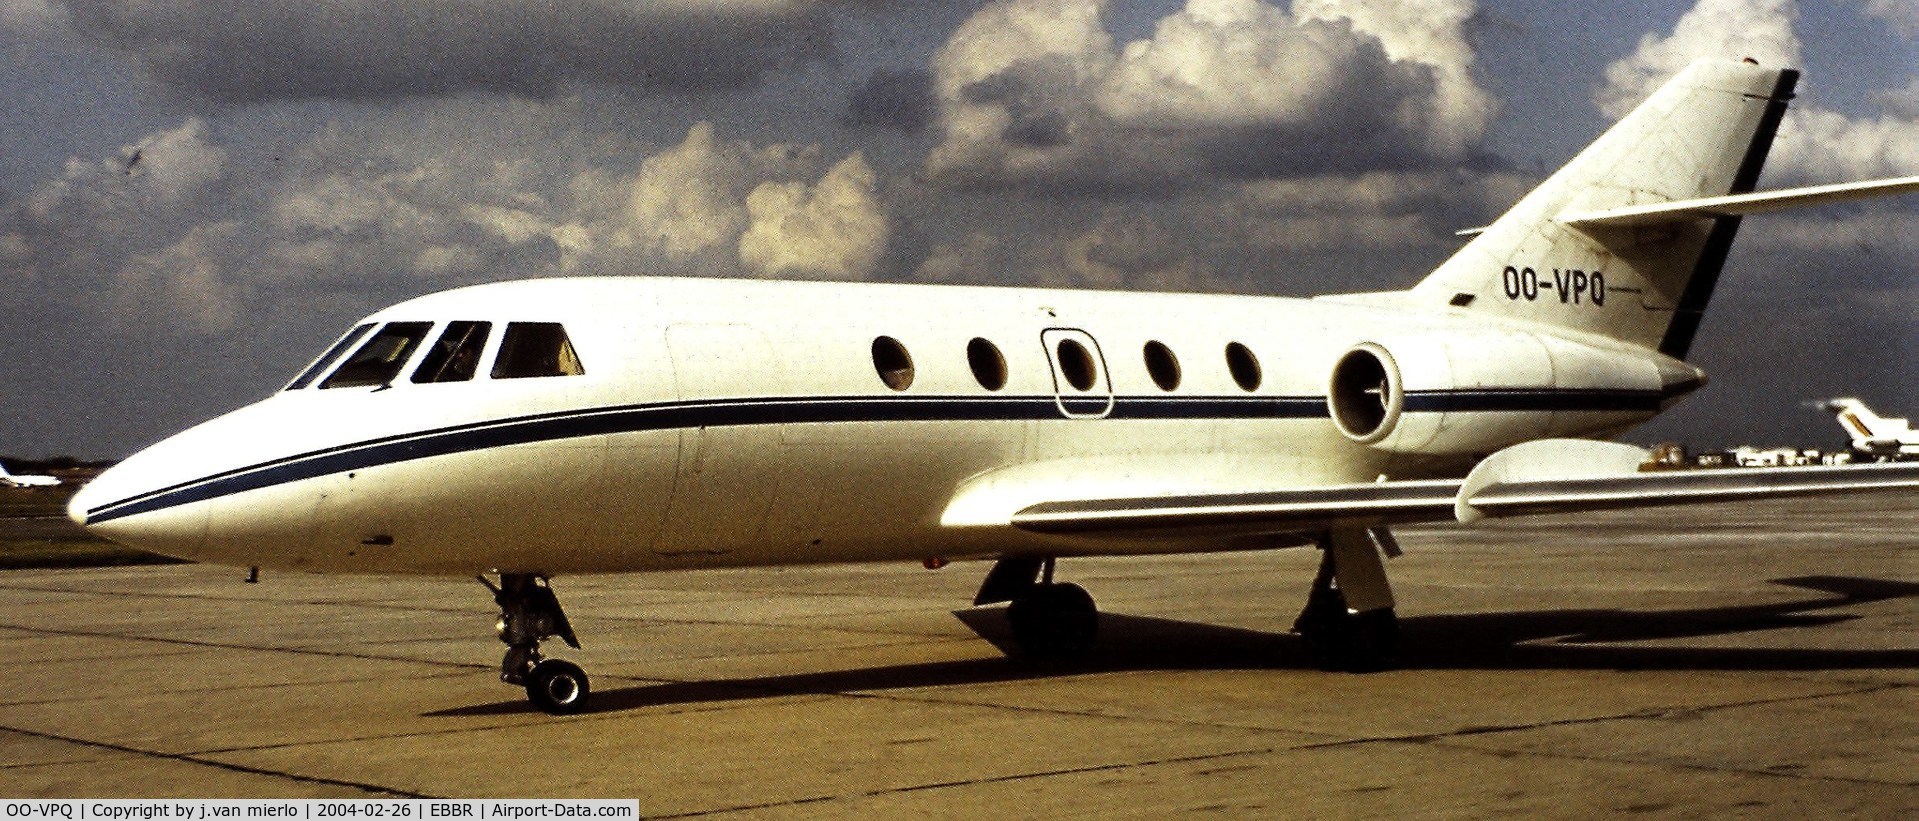 OO-VPQ, 1974 Dassault Falcon (Mystere) 20E C/N 315, Bruusels, Belgium